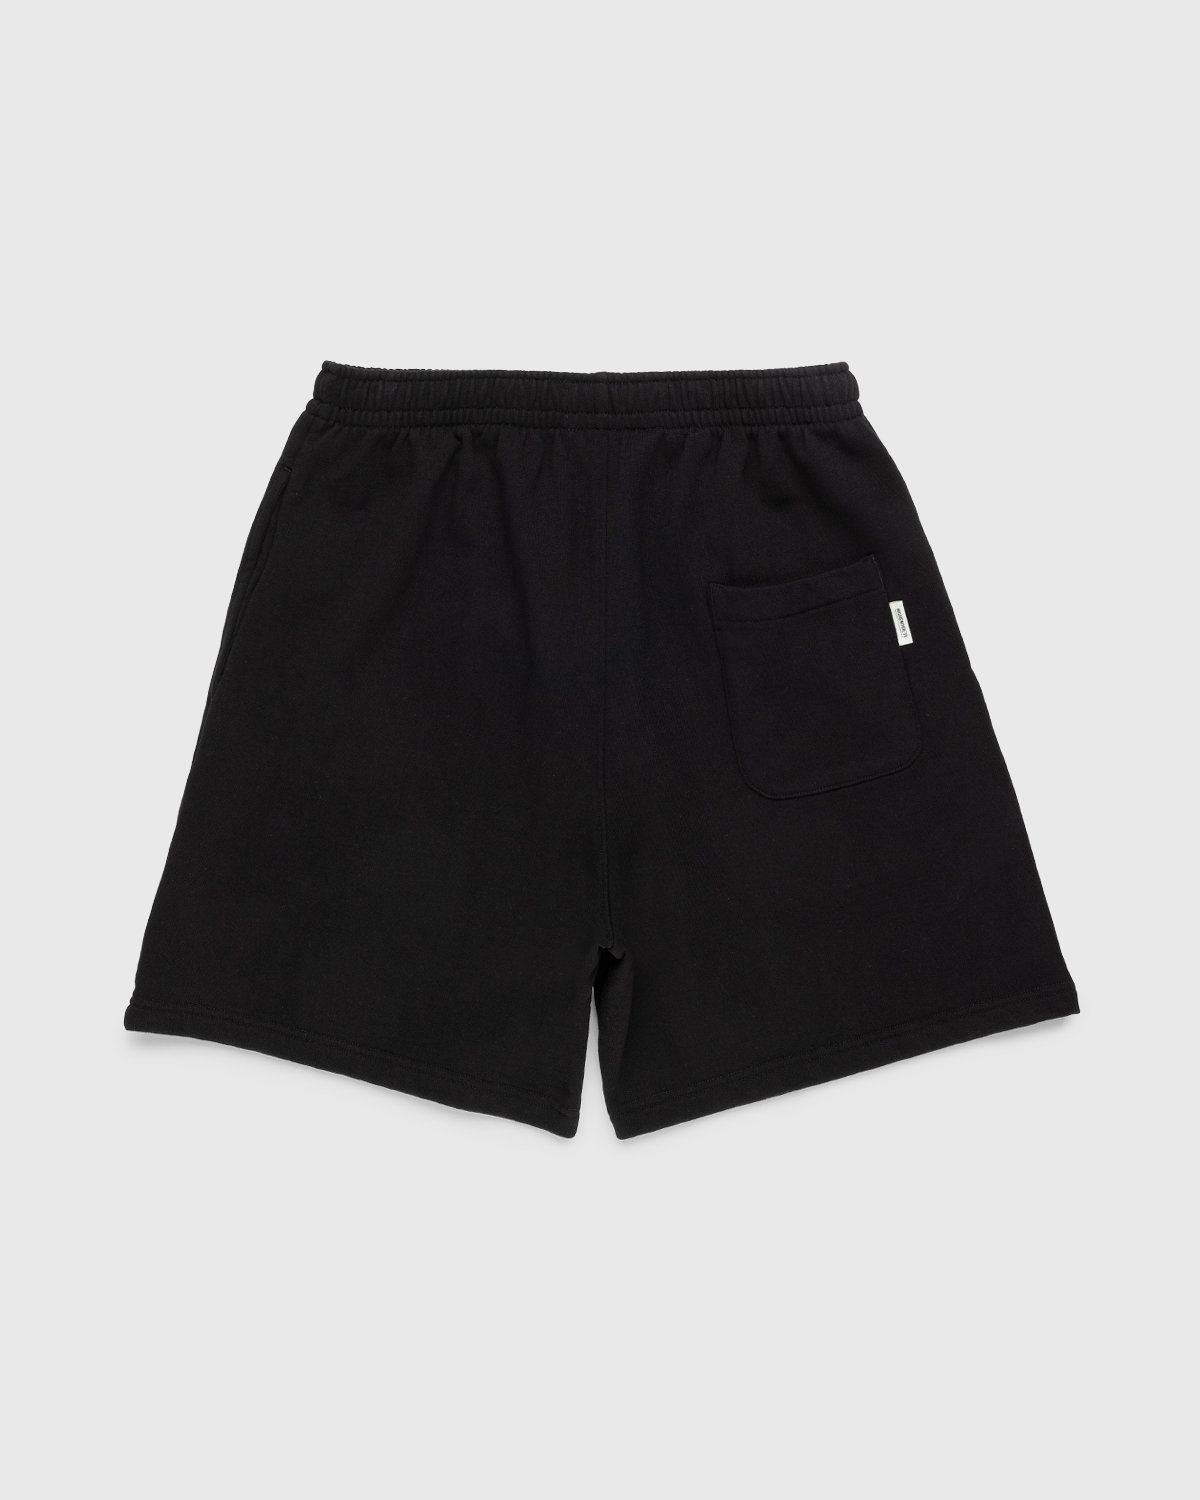 Highsnobiety – Staples Shorts Black - Shorts - Black - Image 2